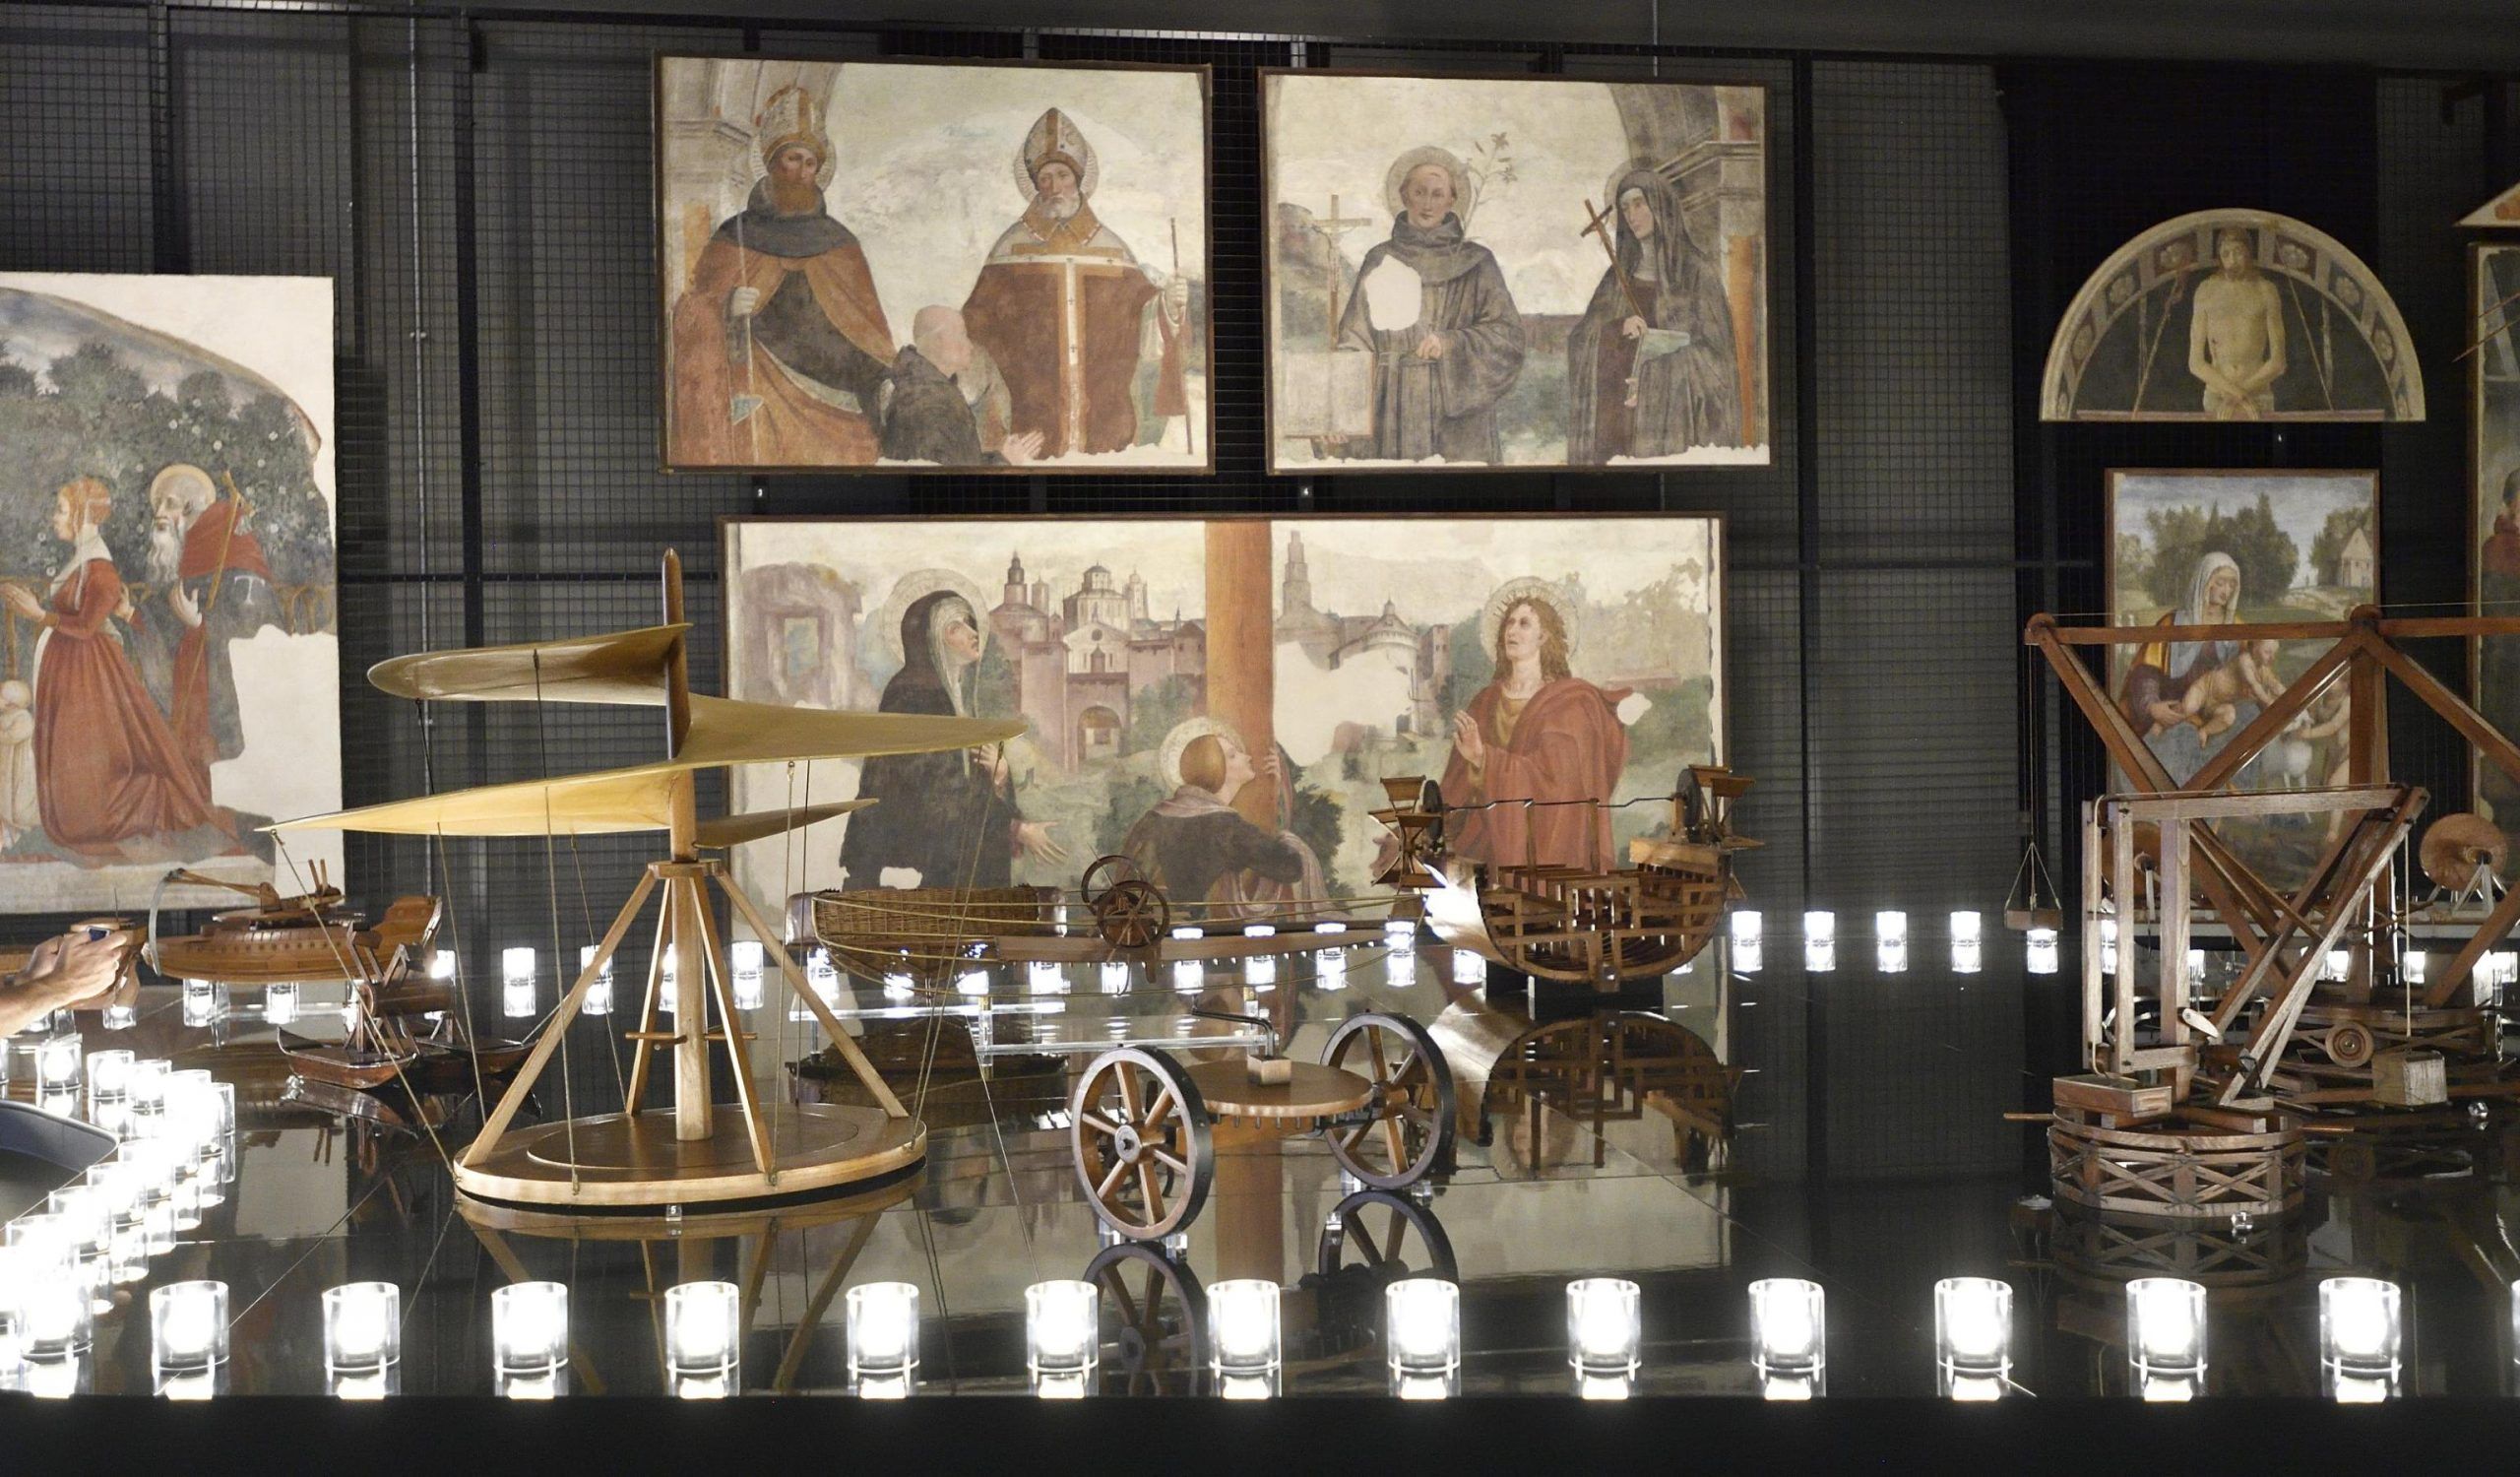 Mostra Leonardo da Vinci Milano 2018: al Museo della Scienza modelli storici ed affreschi